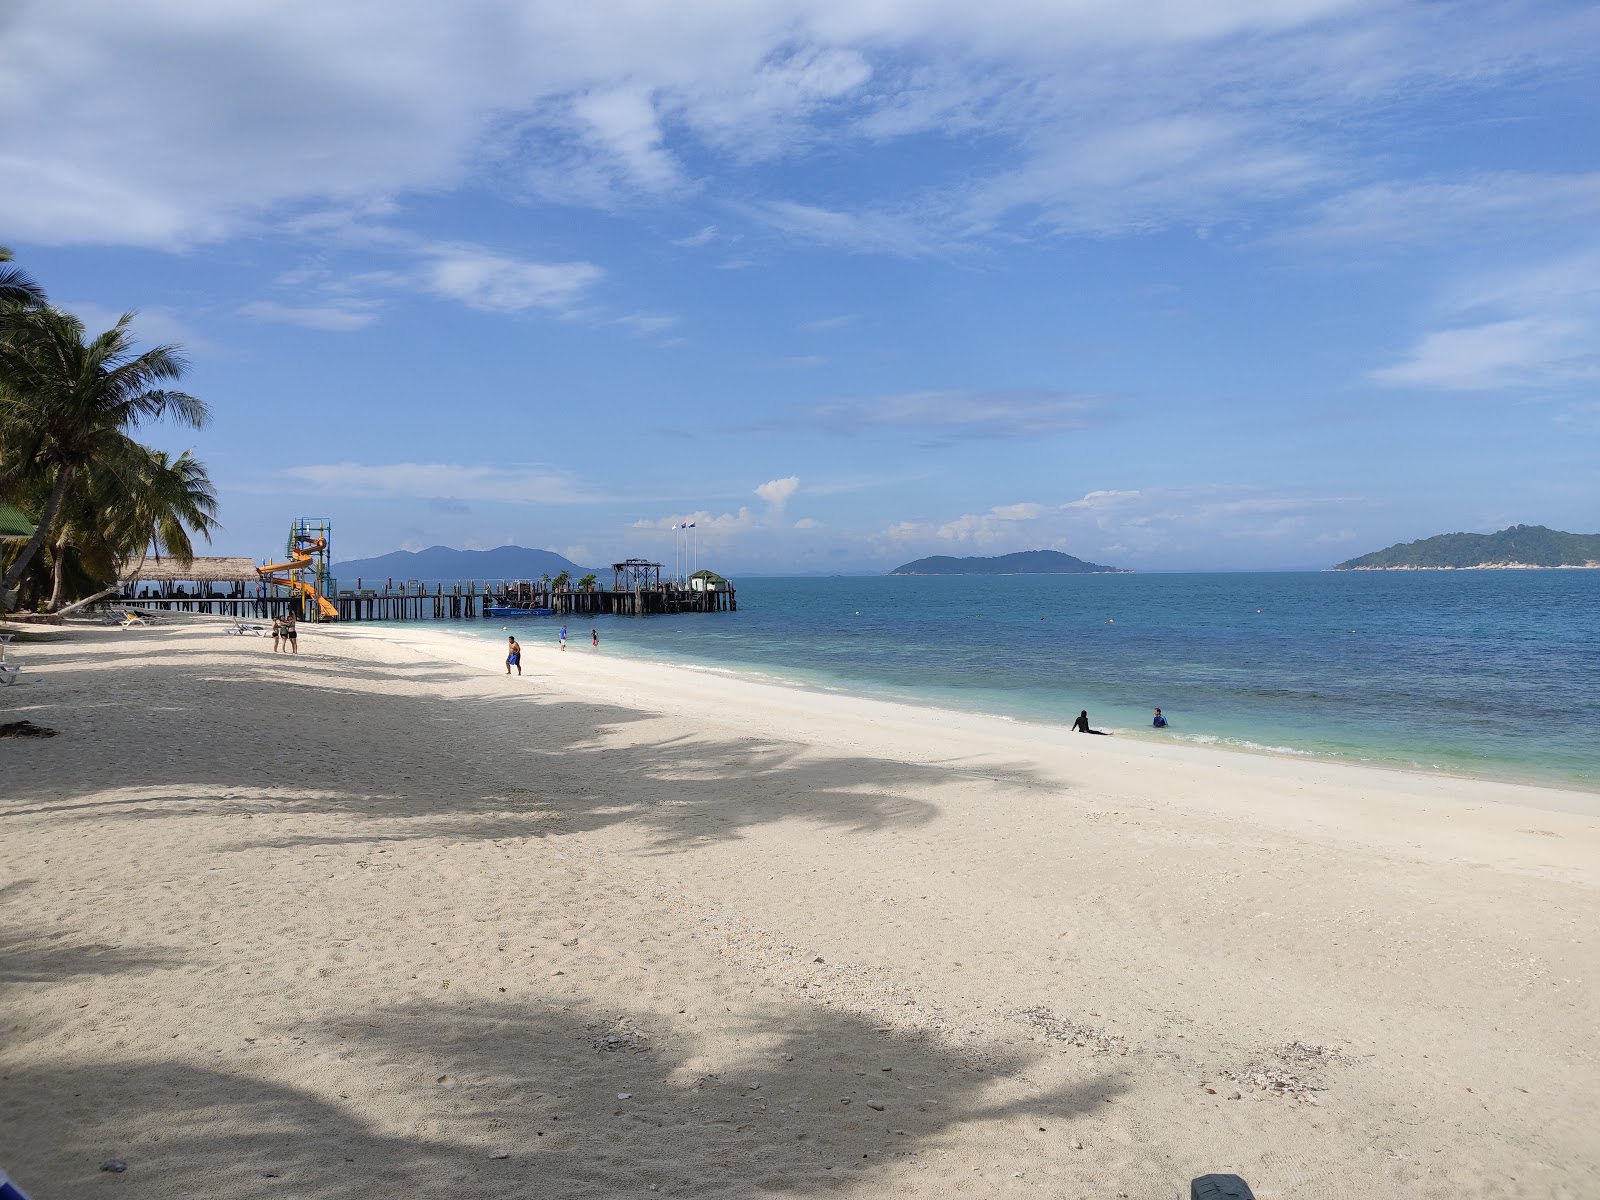 Zdjęcie Rawa Island Resort - popularne miejsce wśród znawców relaksu